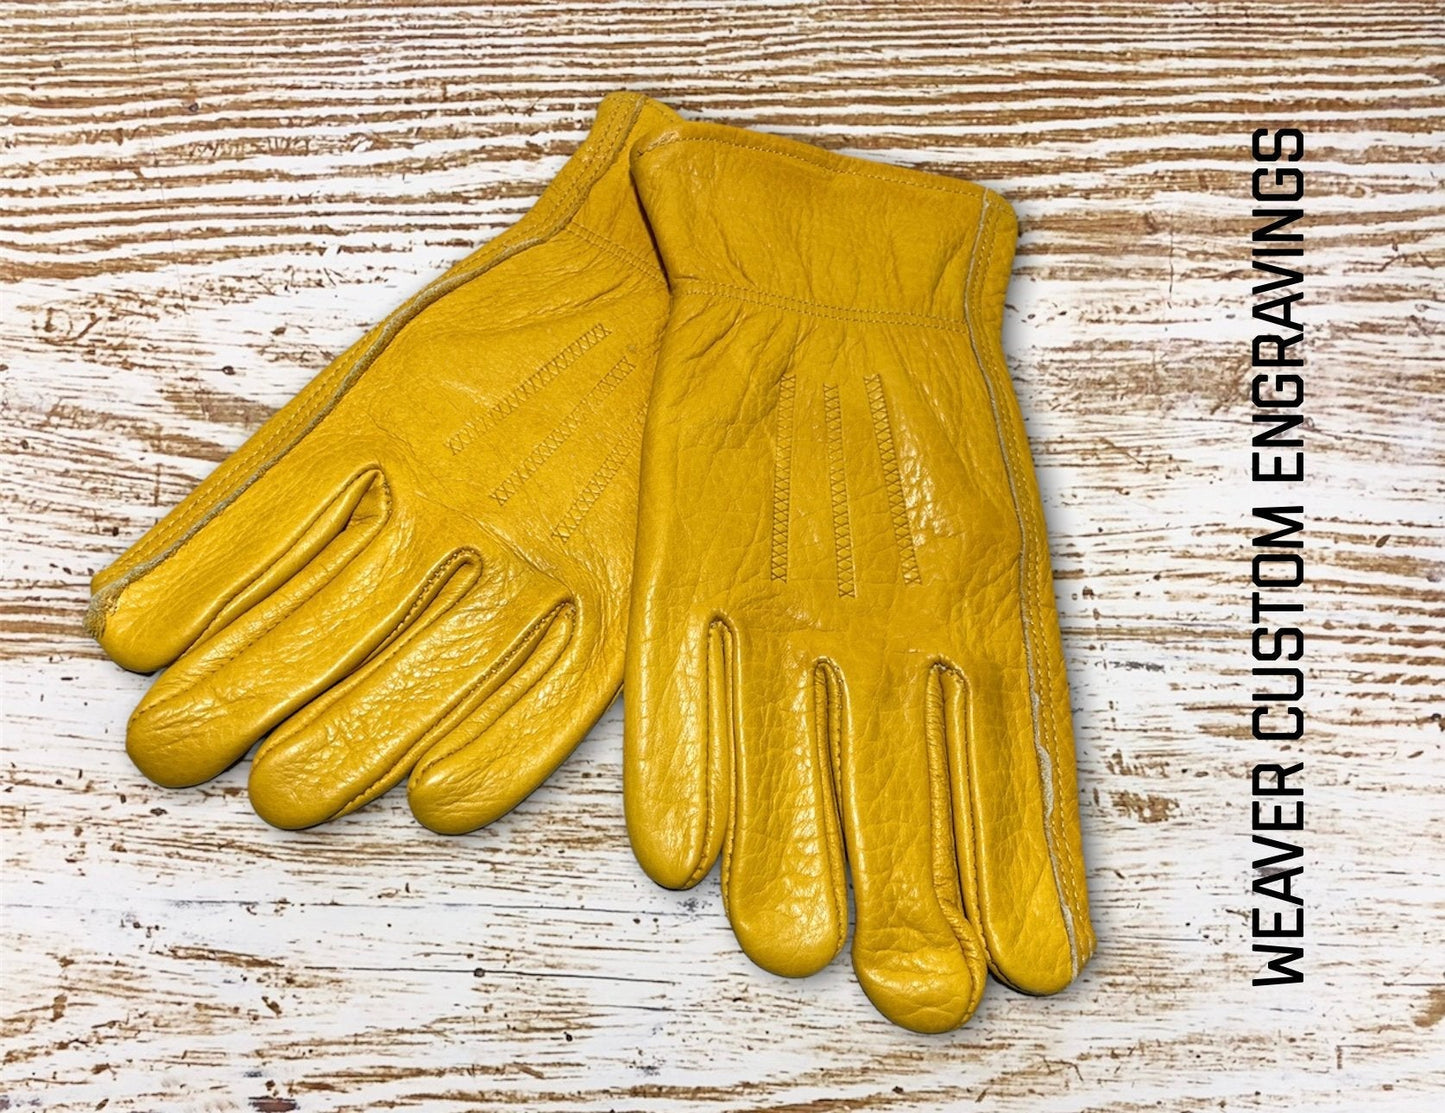 Proverbs 20:13 Custom Gloves Gloves weaver custom gloves   